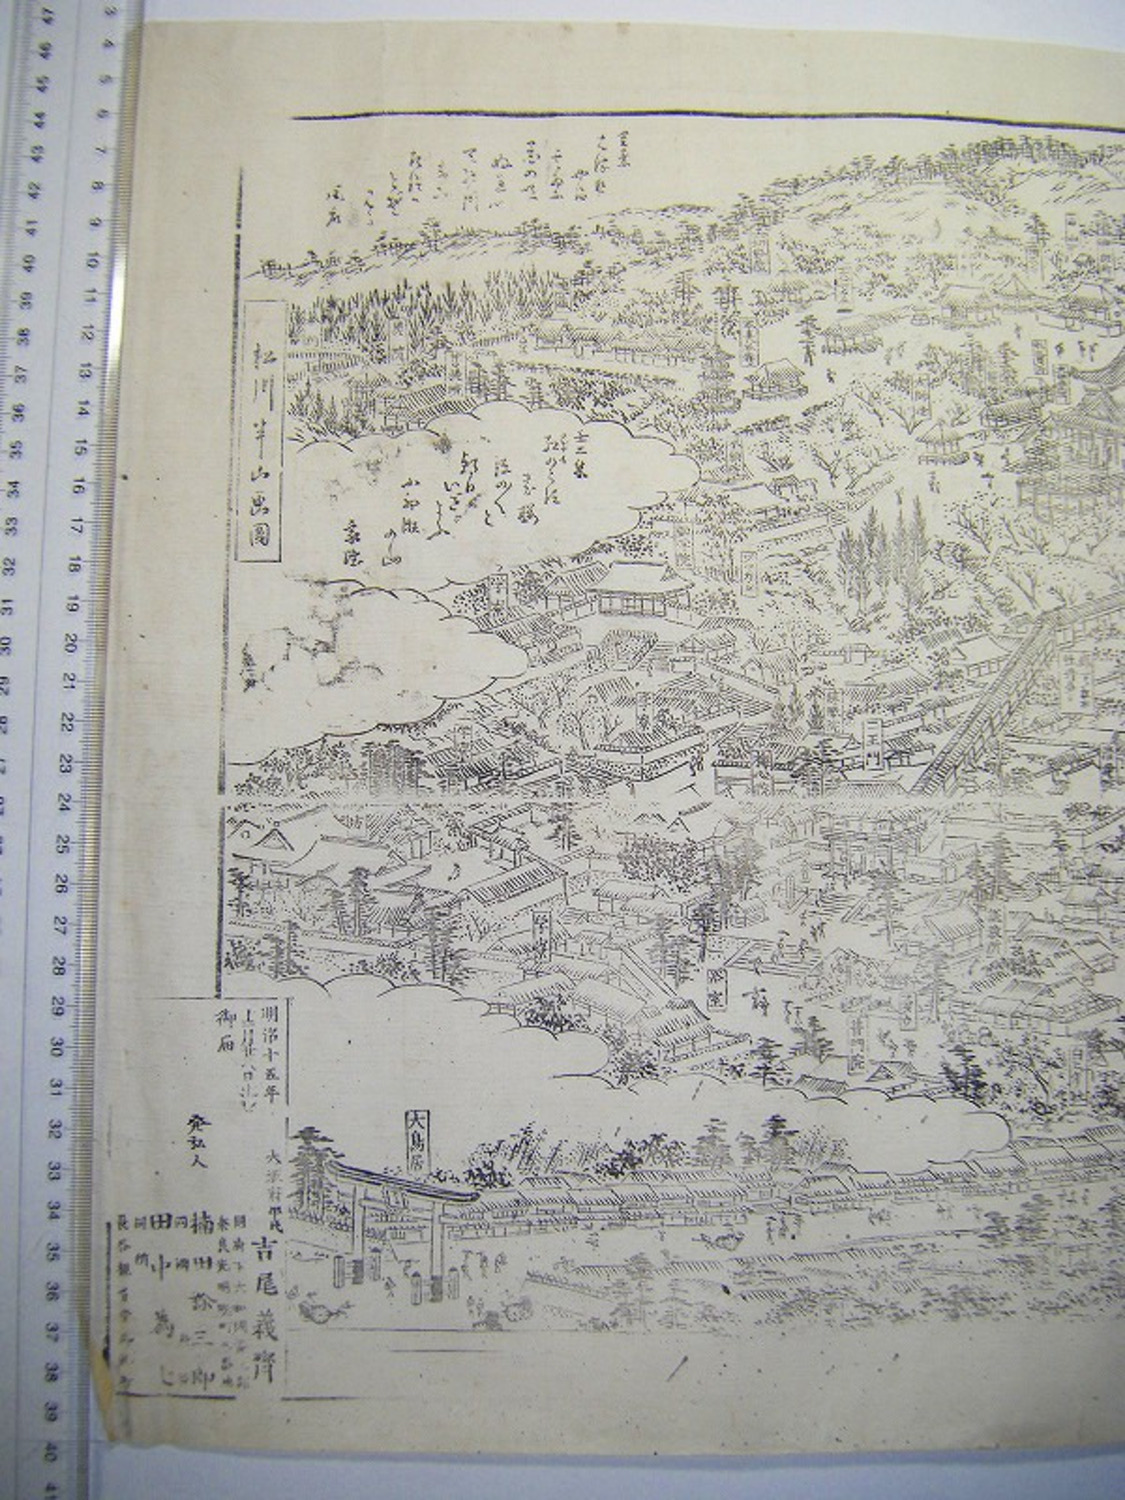 明治 初期 浮世絵 絵図 鳥瞰図 地図 半山 奈良「日本 大和 長谷 名所 一覧之図」木版画 ukiyoe